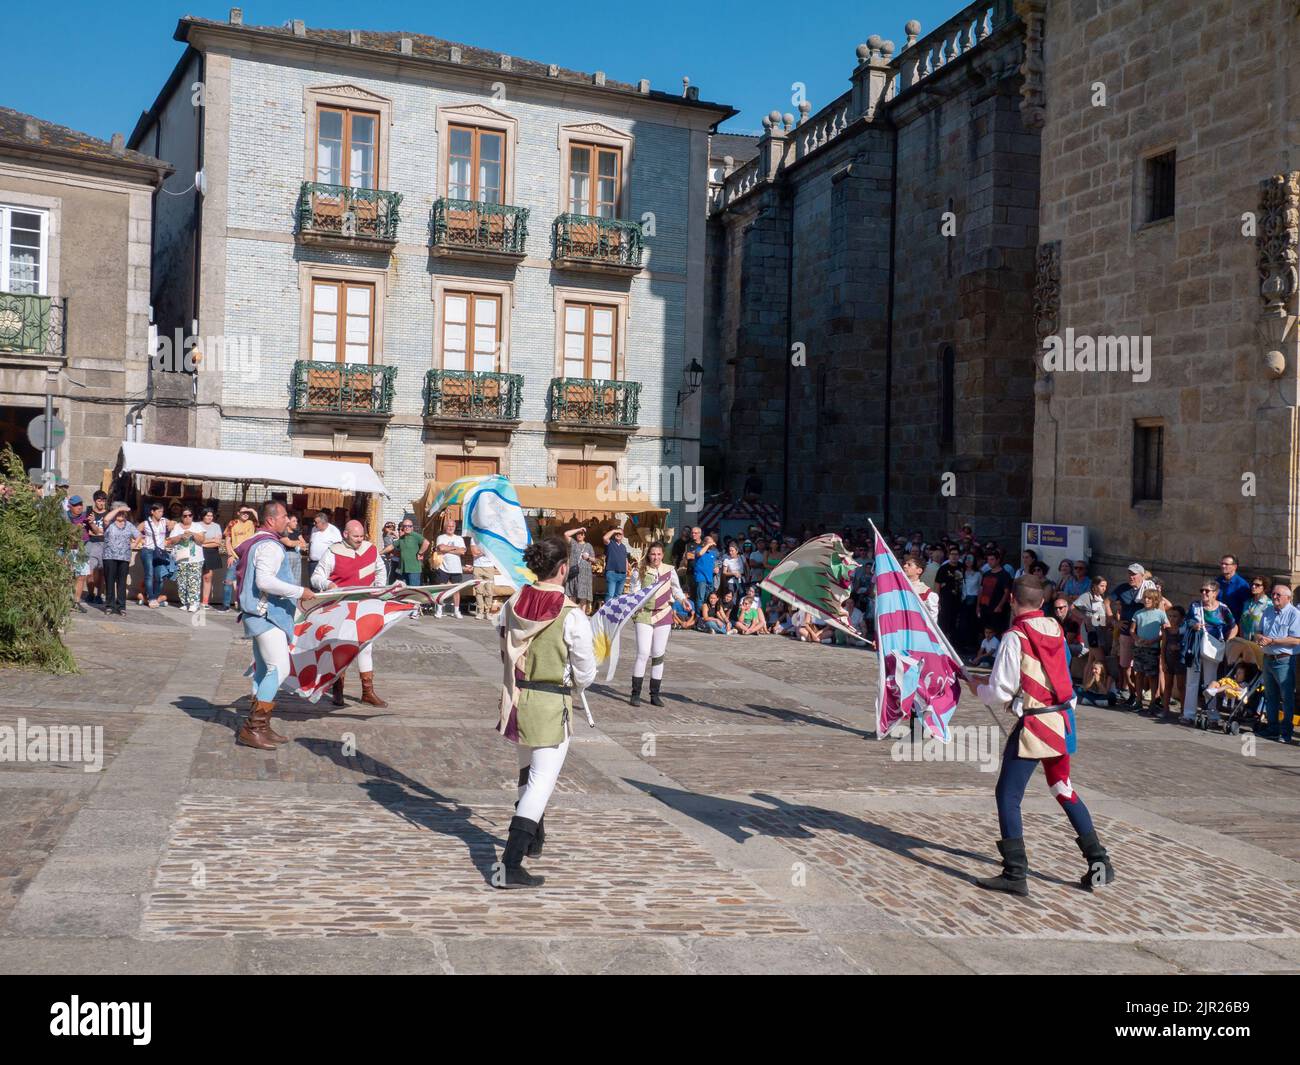 MONDONEDO, ESPAÑA - 14 DE AGOSTO de 2022: Representación con banners en la feria medieval en la plaza de la catedral del casco antiguo de Mondonedo,Lugo,Galicia,España Foto de stock